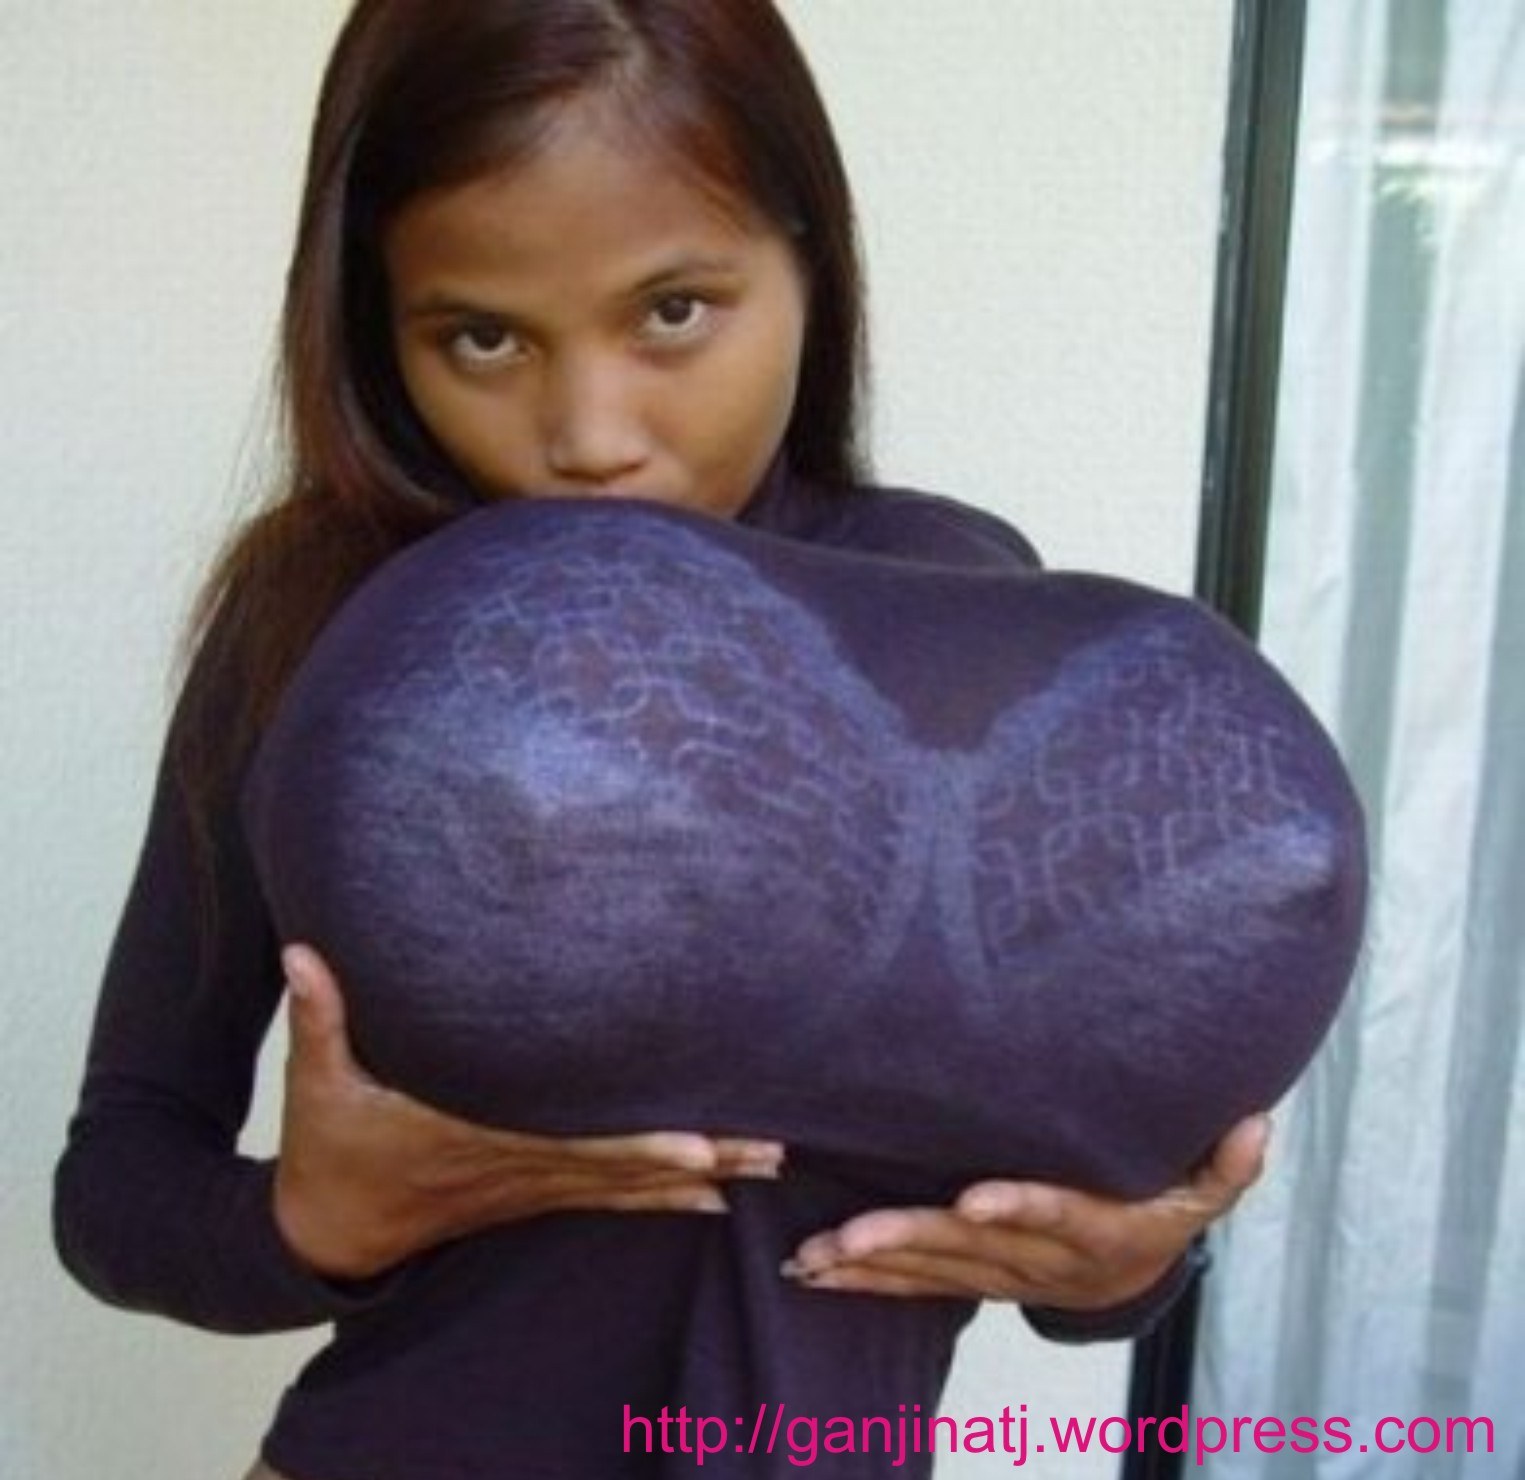 девушку с самой огромной грудью в мире фото 4